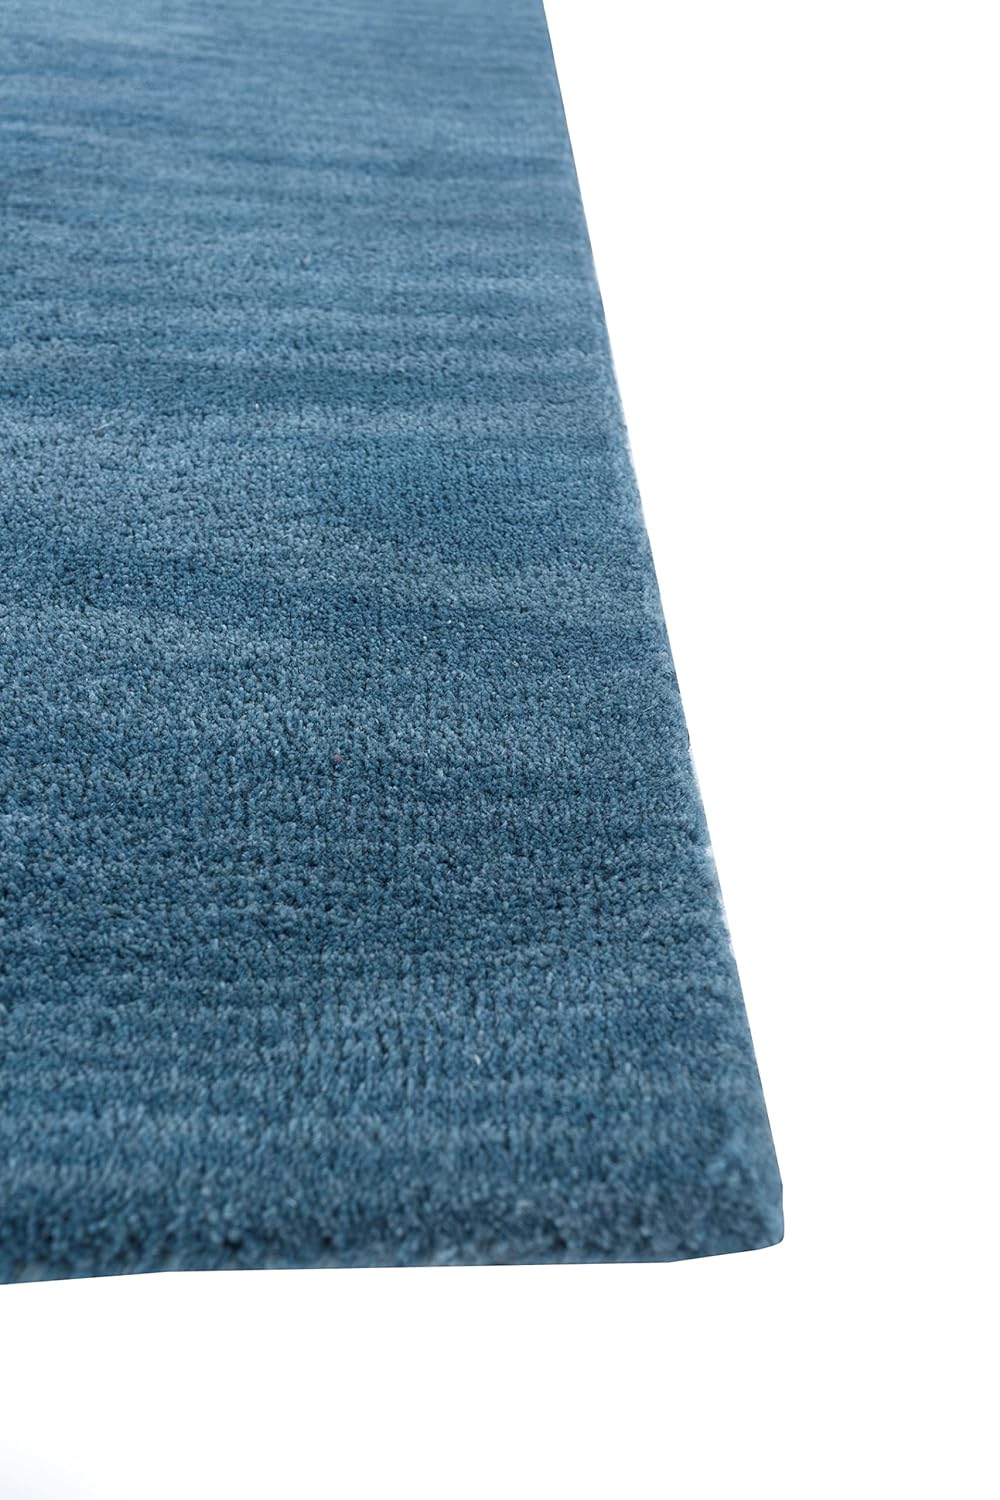 Playful Blue Wool Rug, 6X9ft, Handmade | Wool Handmade Tufted Cartoon Lightweight Modern Carpet (6x9 Feet, Blue)